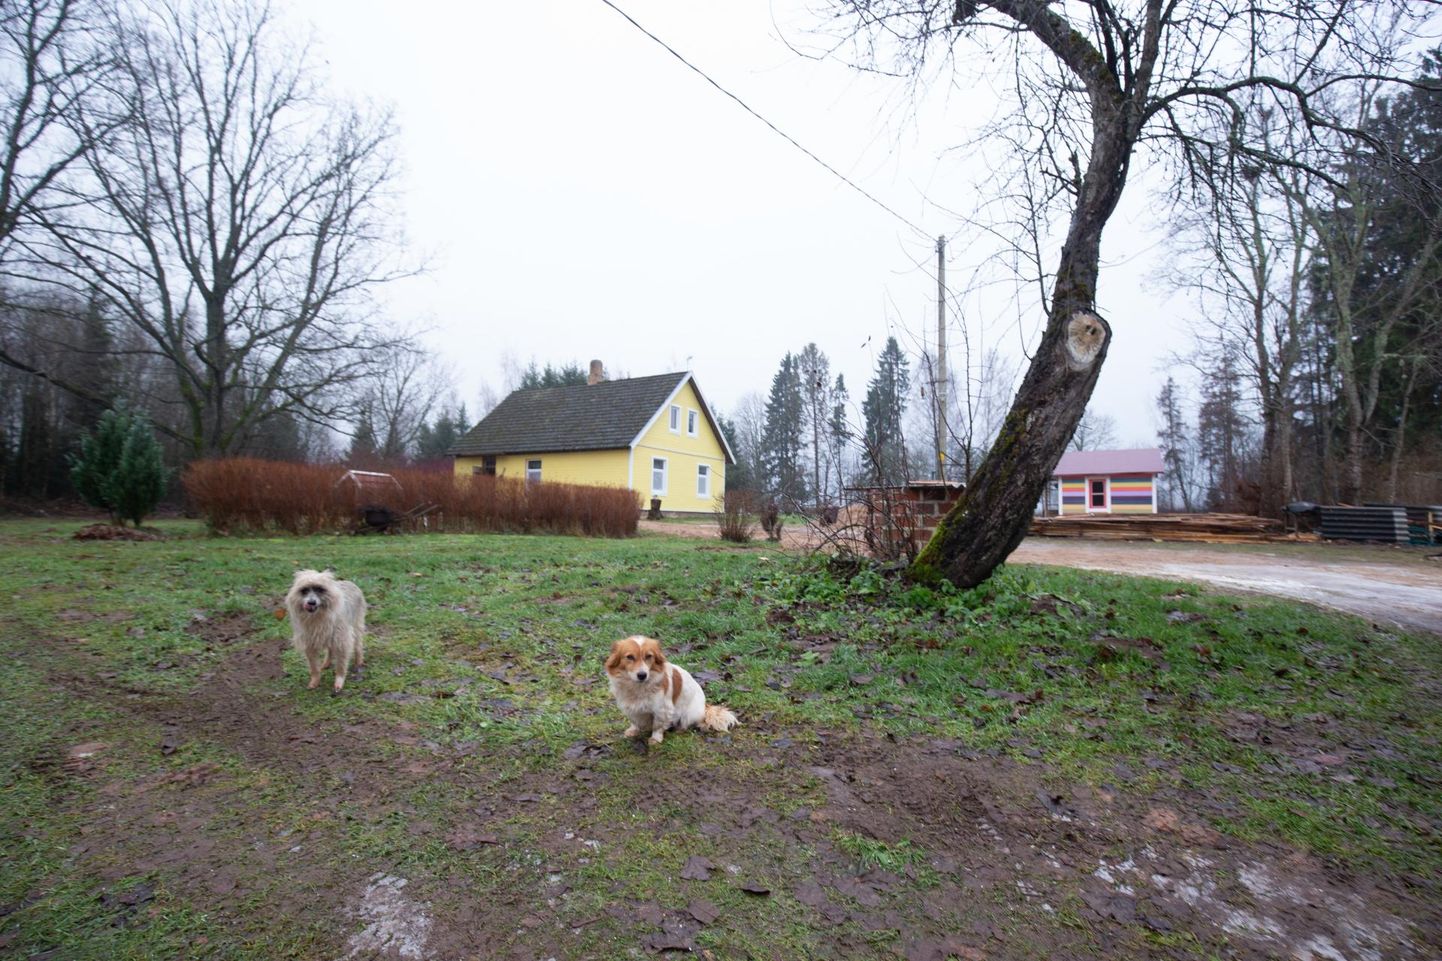 Rootslasi petnud ettevõte Bolagsupplysningen on Krediidiinfo andmetel registreeritud Mulgimaale Pärsi külla. Sealses majapidamises tervitasid ajakirjanikku kaks sõbralikku koera.